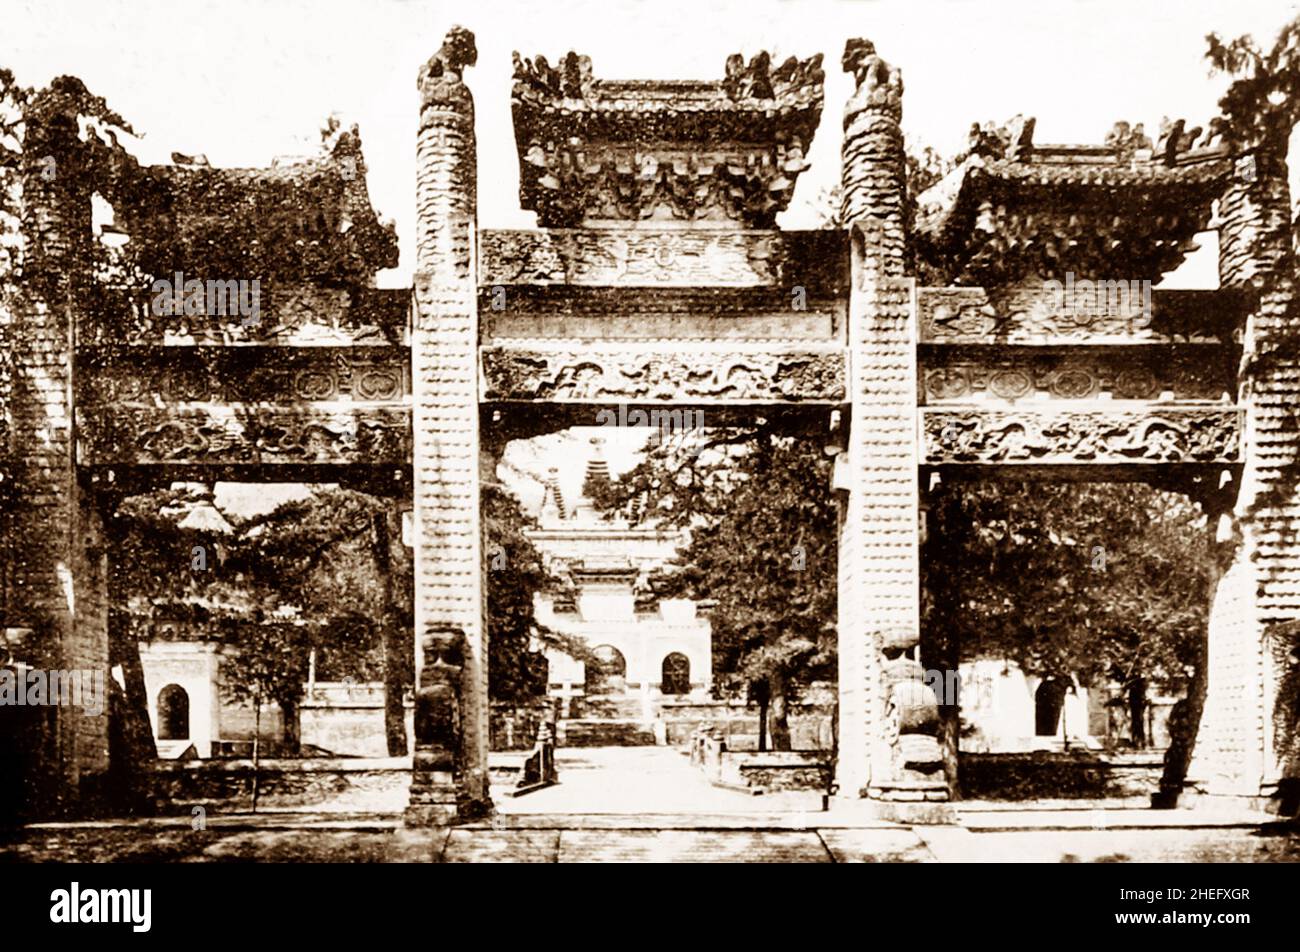 Monastery near Beijing, China, early 1900s Stock Photo